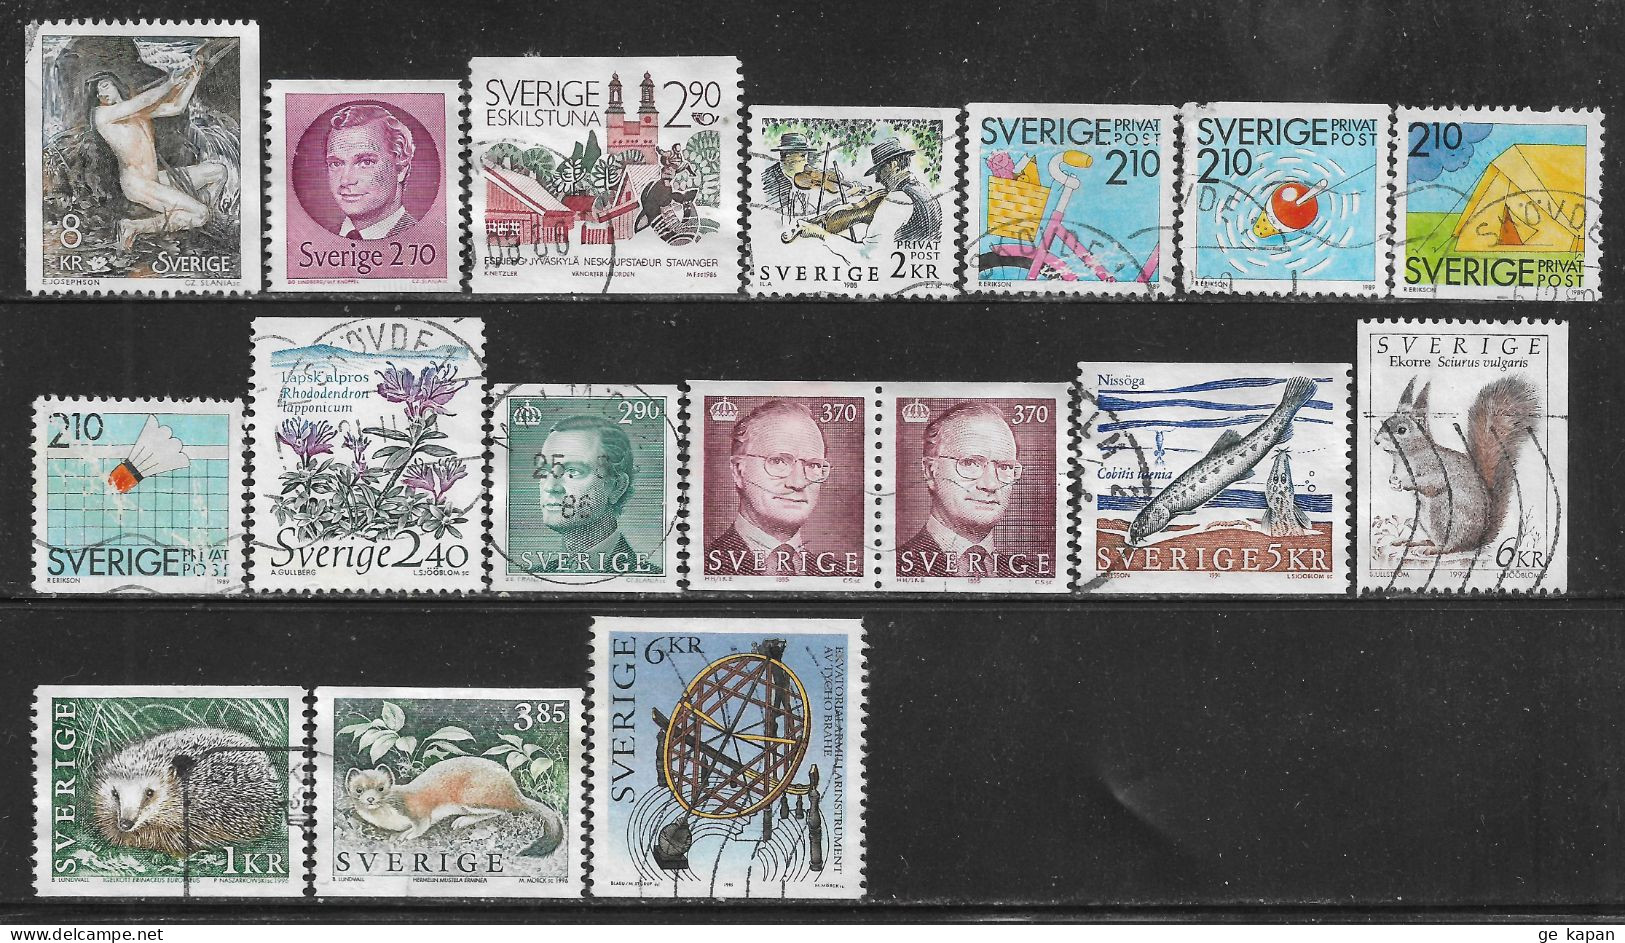 1980-96 SWEDEN 17 Used Stamps (Sc.# 1340,1372,1604,1685,1741,1743,1744,1746,1762,1785,1787,1869,1933,1926,1931) CV $7.95 - Oblitérés